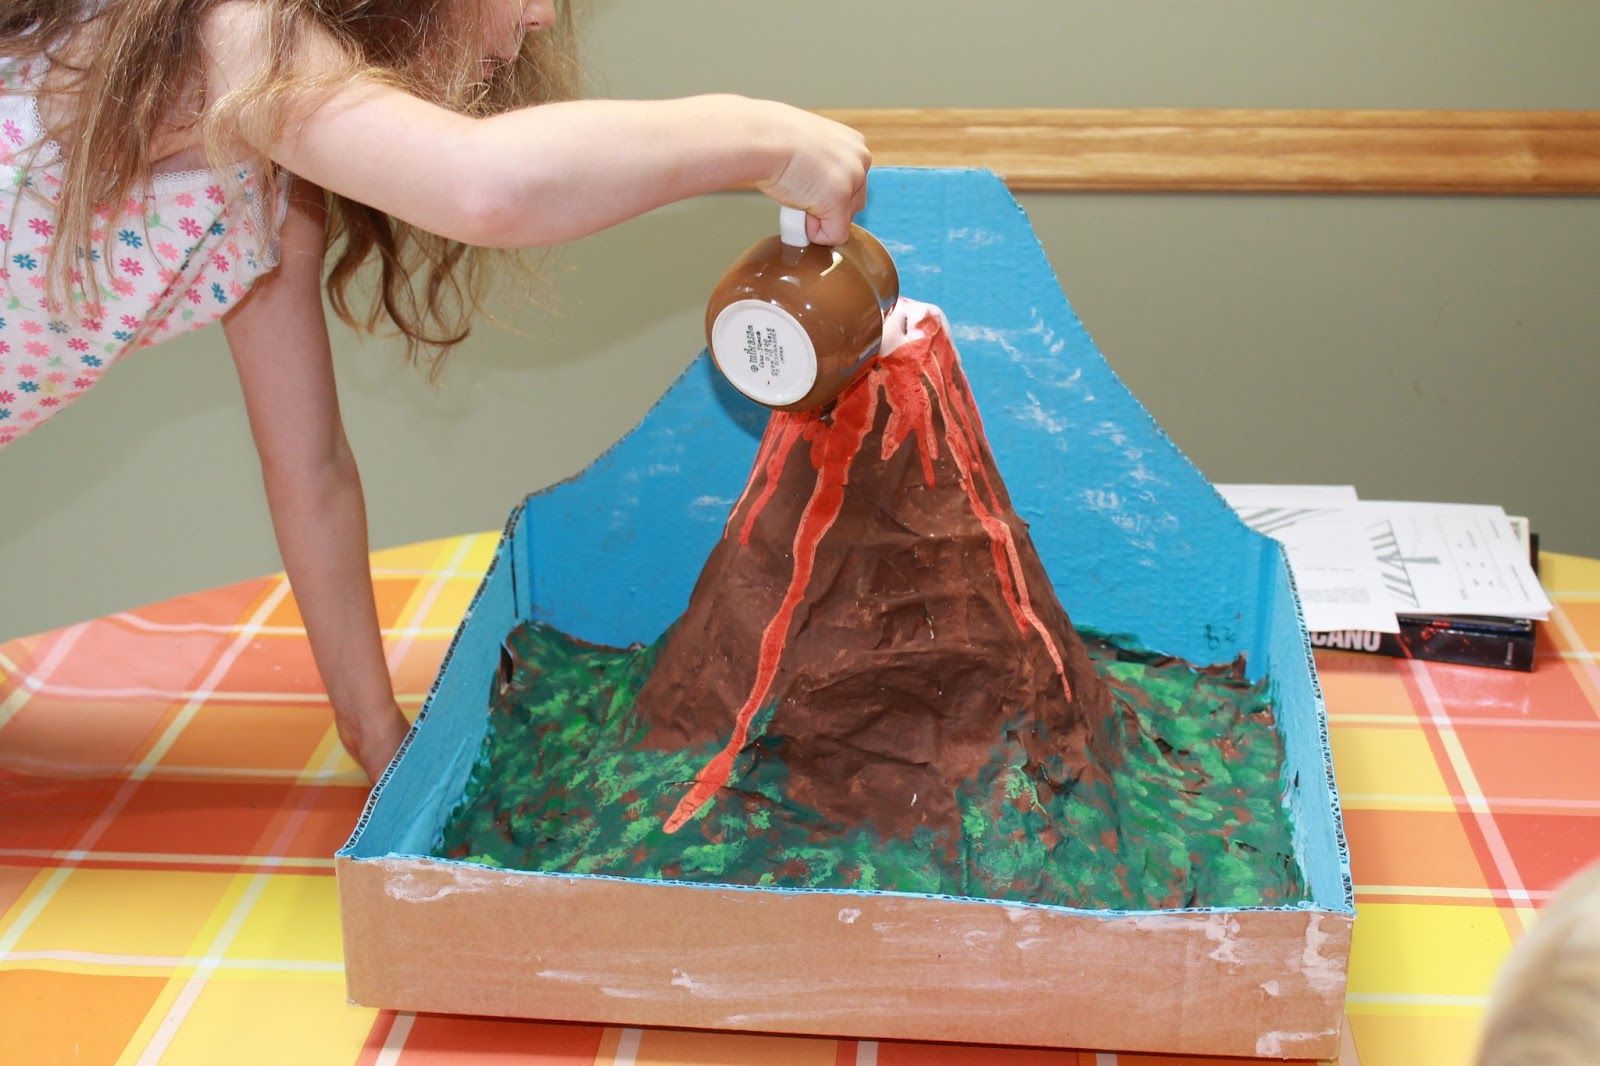 Макет вулкана: инструкция по изготовлению в домашних условиях извергающейся модели своими руками